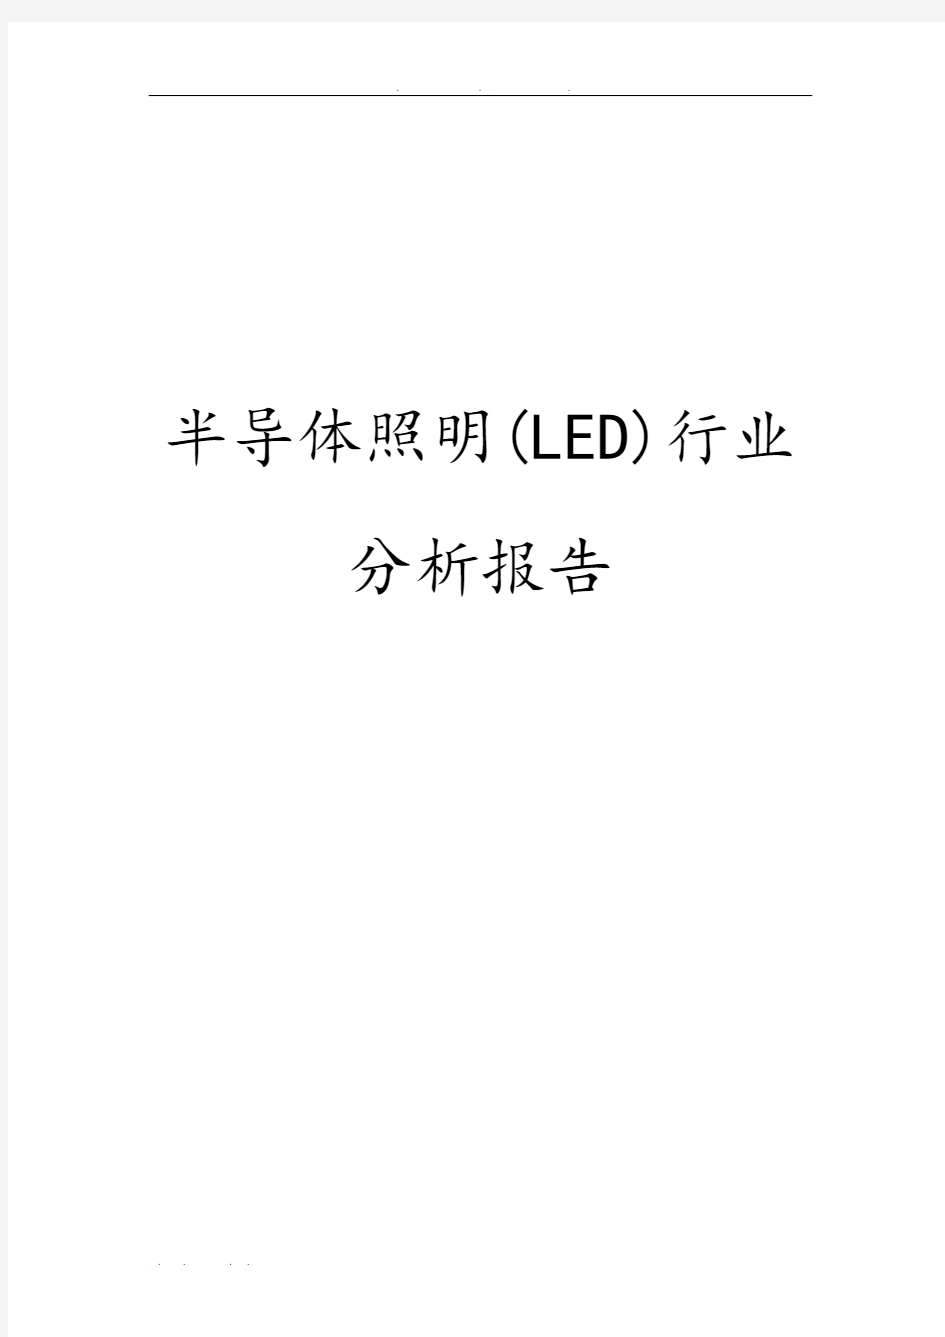 半导体照明(LED)行业分析报告文案